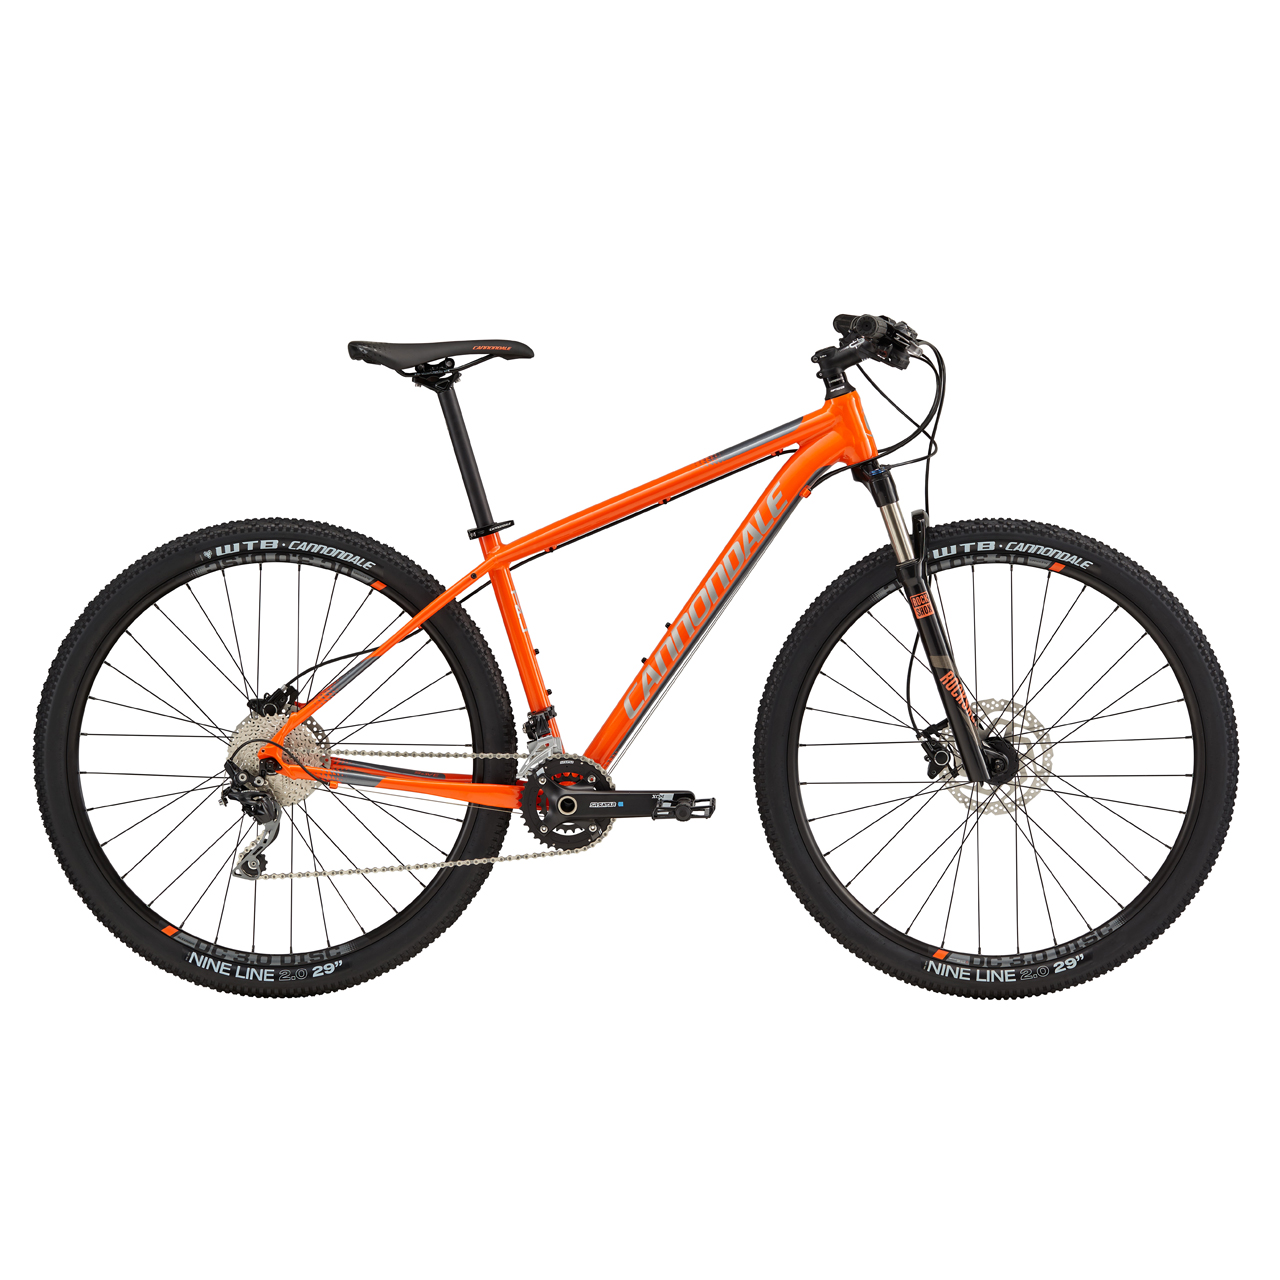 دوچرخه کوهستان کنندال تریل 3 سایز 29 رنگ نارنجی2017